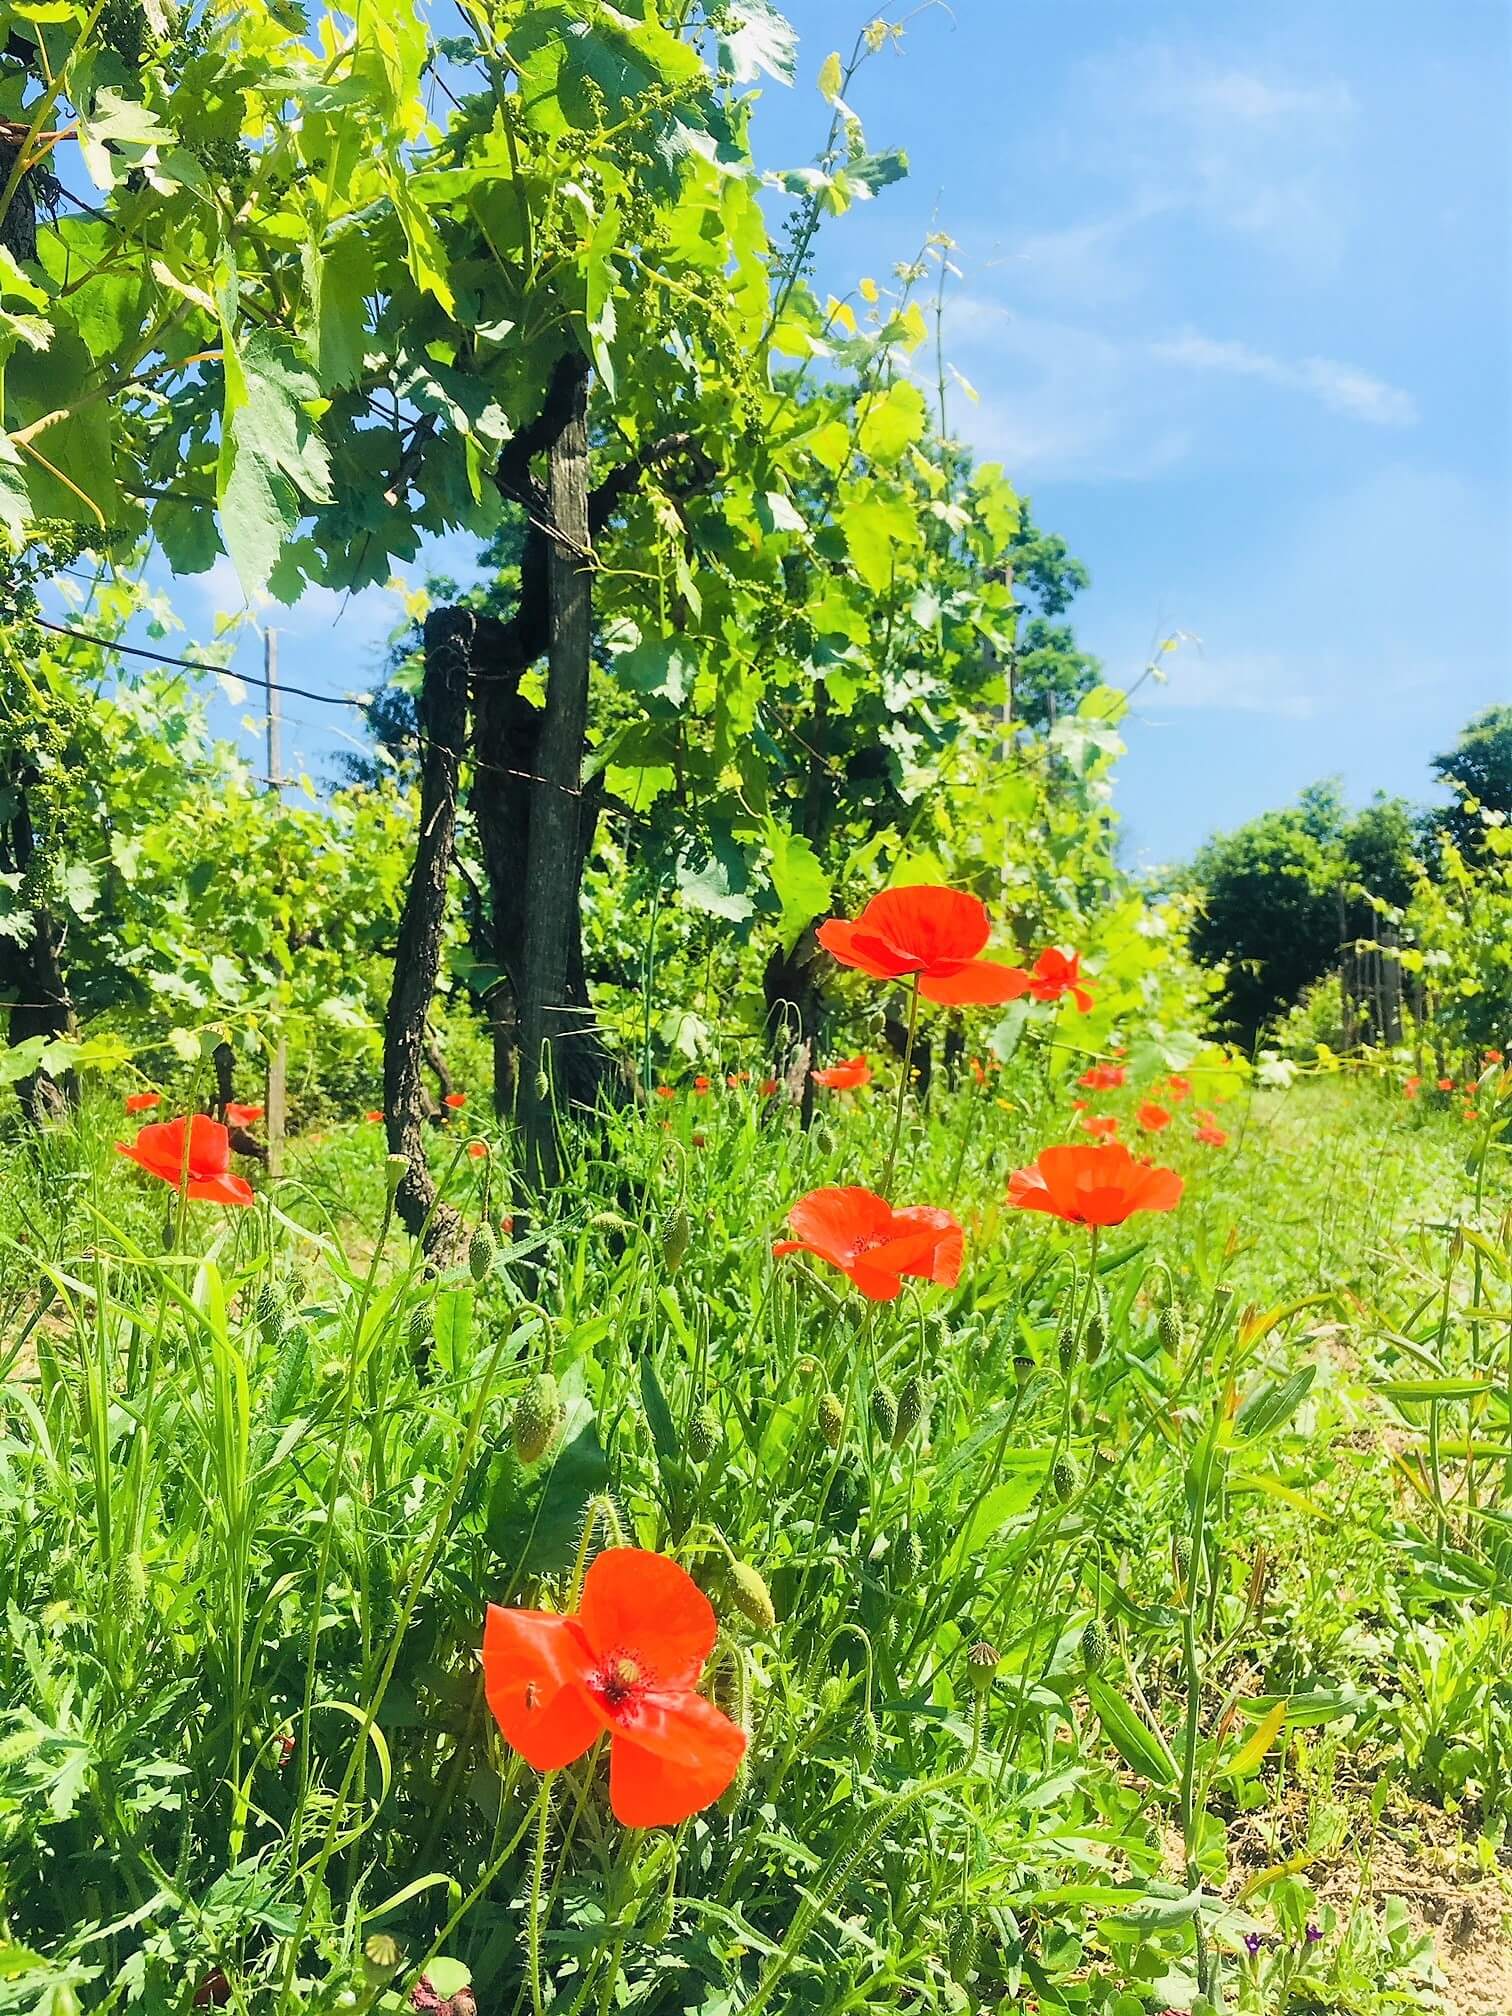 Det har regnet mye og ofte her på vingården i Italia de siste ukene. I år ser det ut at det er for mye vann for druene og vinstokkene - i kontrast til fjorårets sesong som var alt for tørr og varm. Det er bare å sette i gang med tiltak mot råte, sopp og sykdommer.